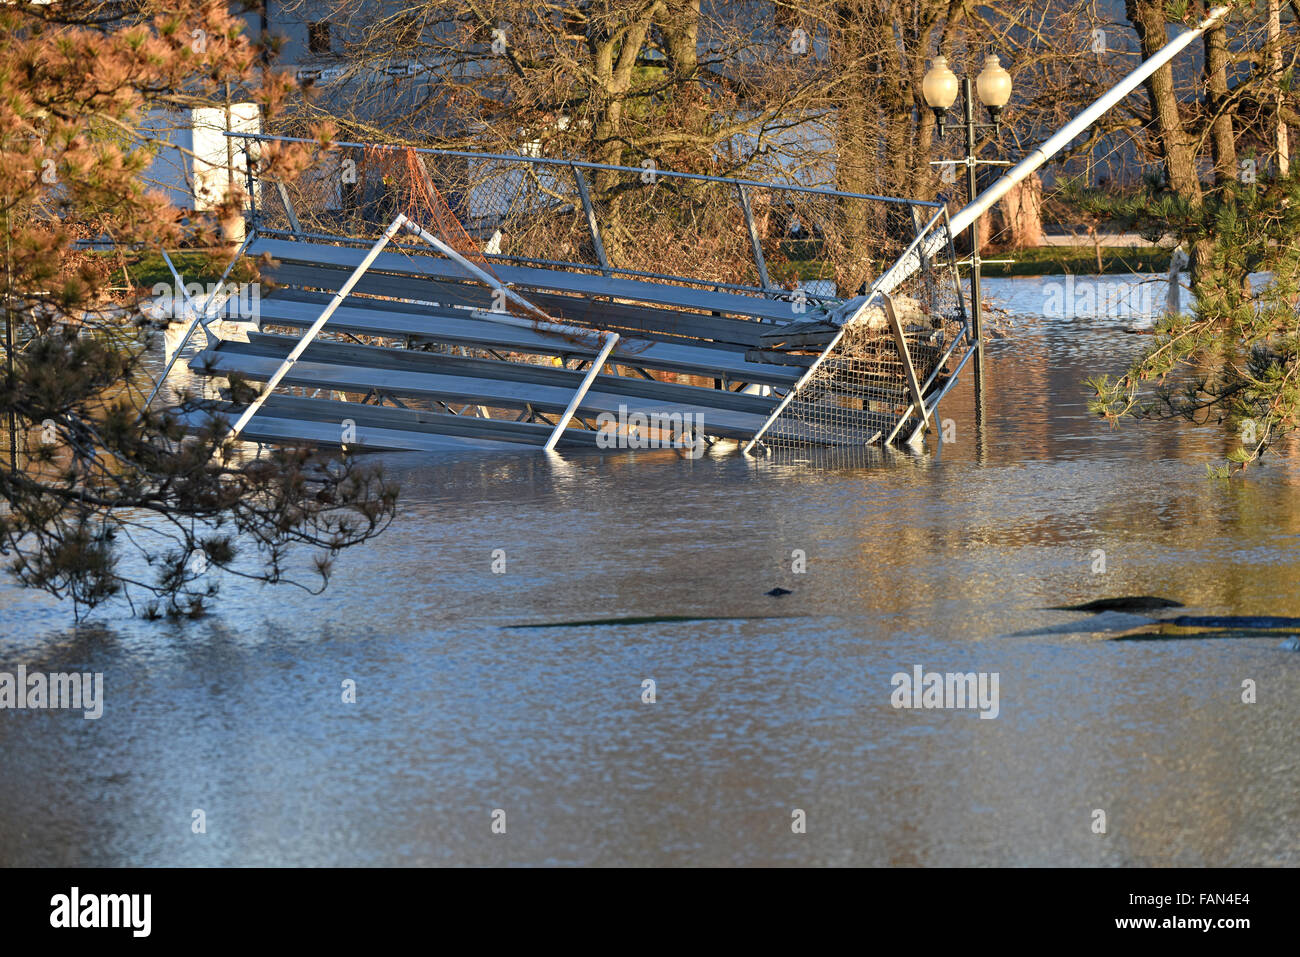 Valley Park, Missouri, États-Unis. 1er janvier 2016. Les eaux de crue de la rivière Meramec près du parc à proximité, dans la vieille ville de Fenton. Crédit : Gino's Premium Images/Alamy Live News Banque D'Images